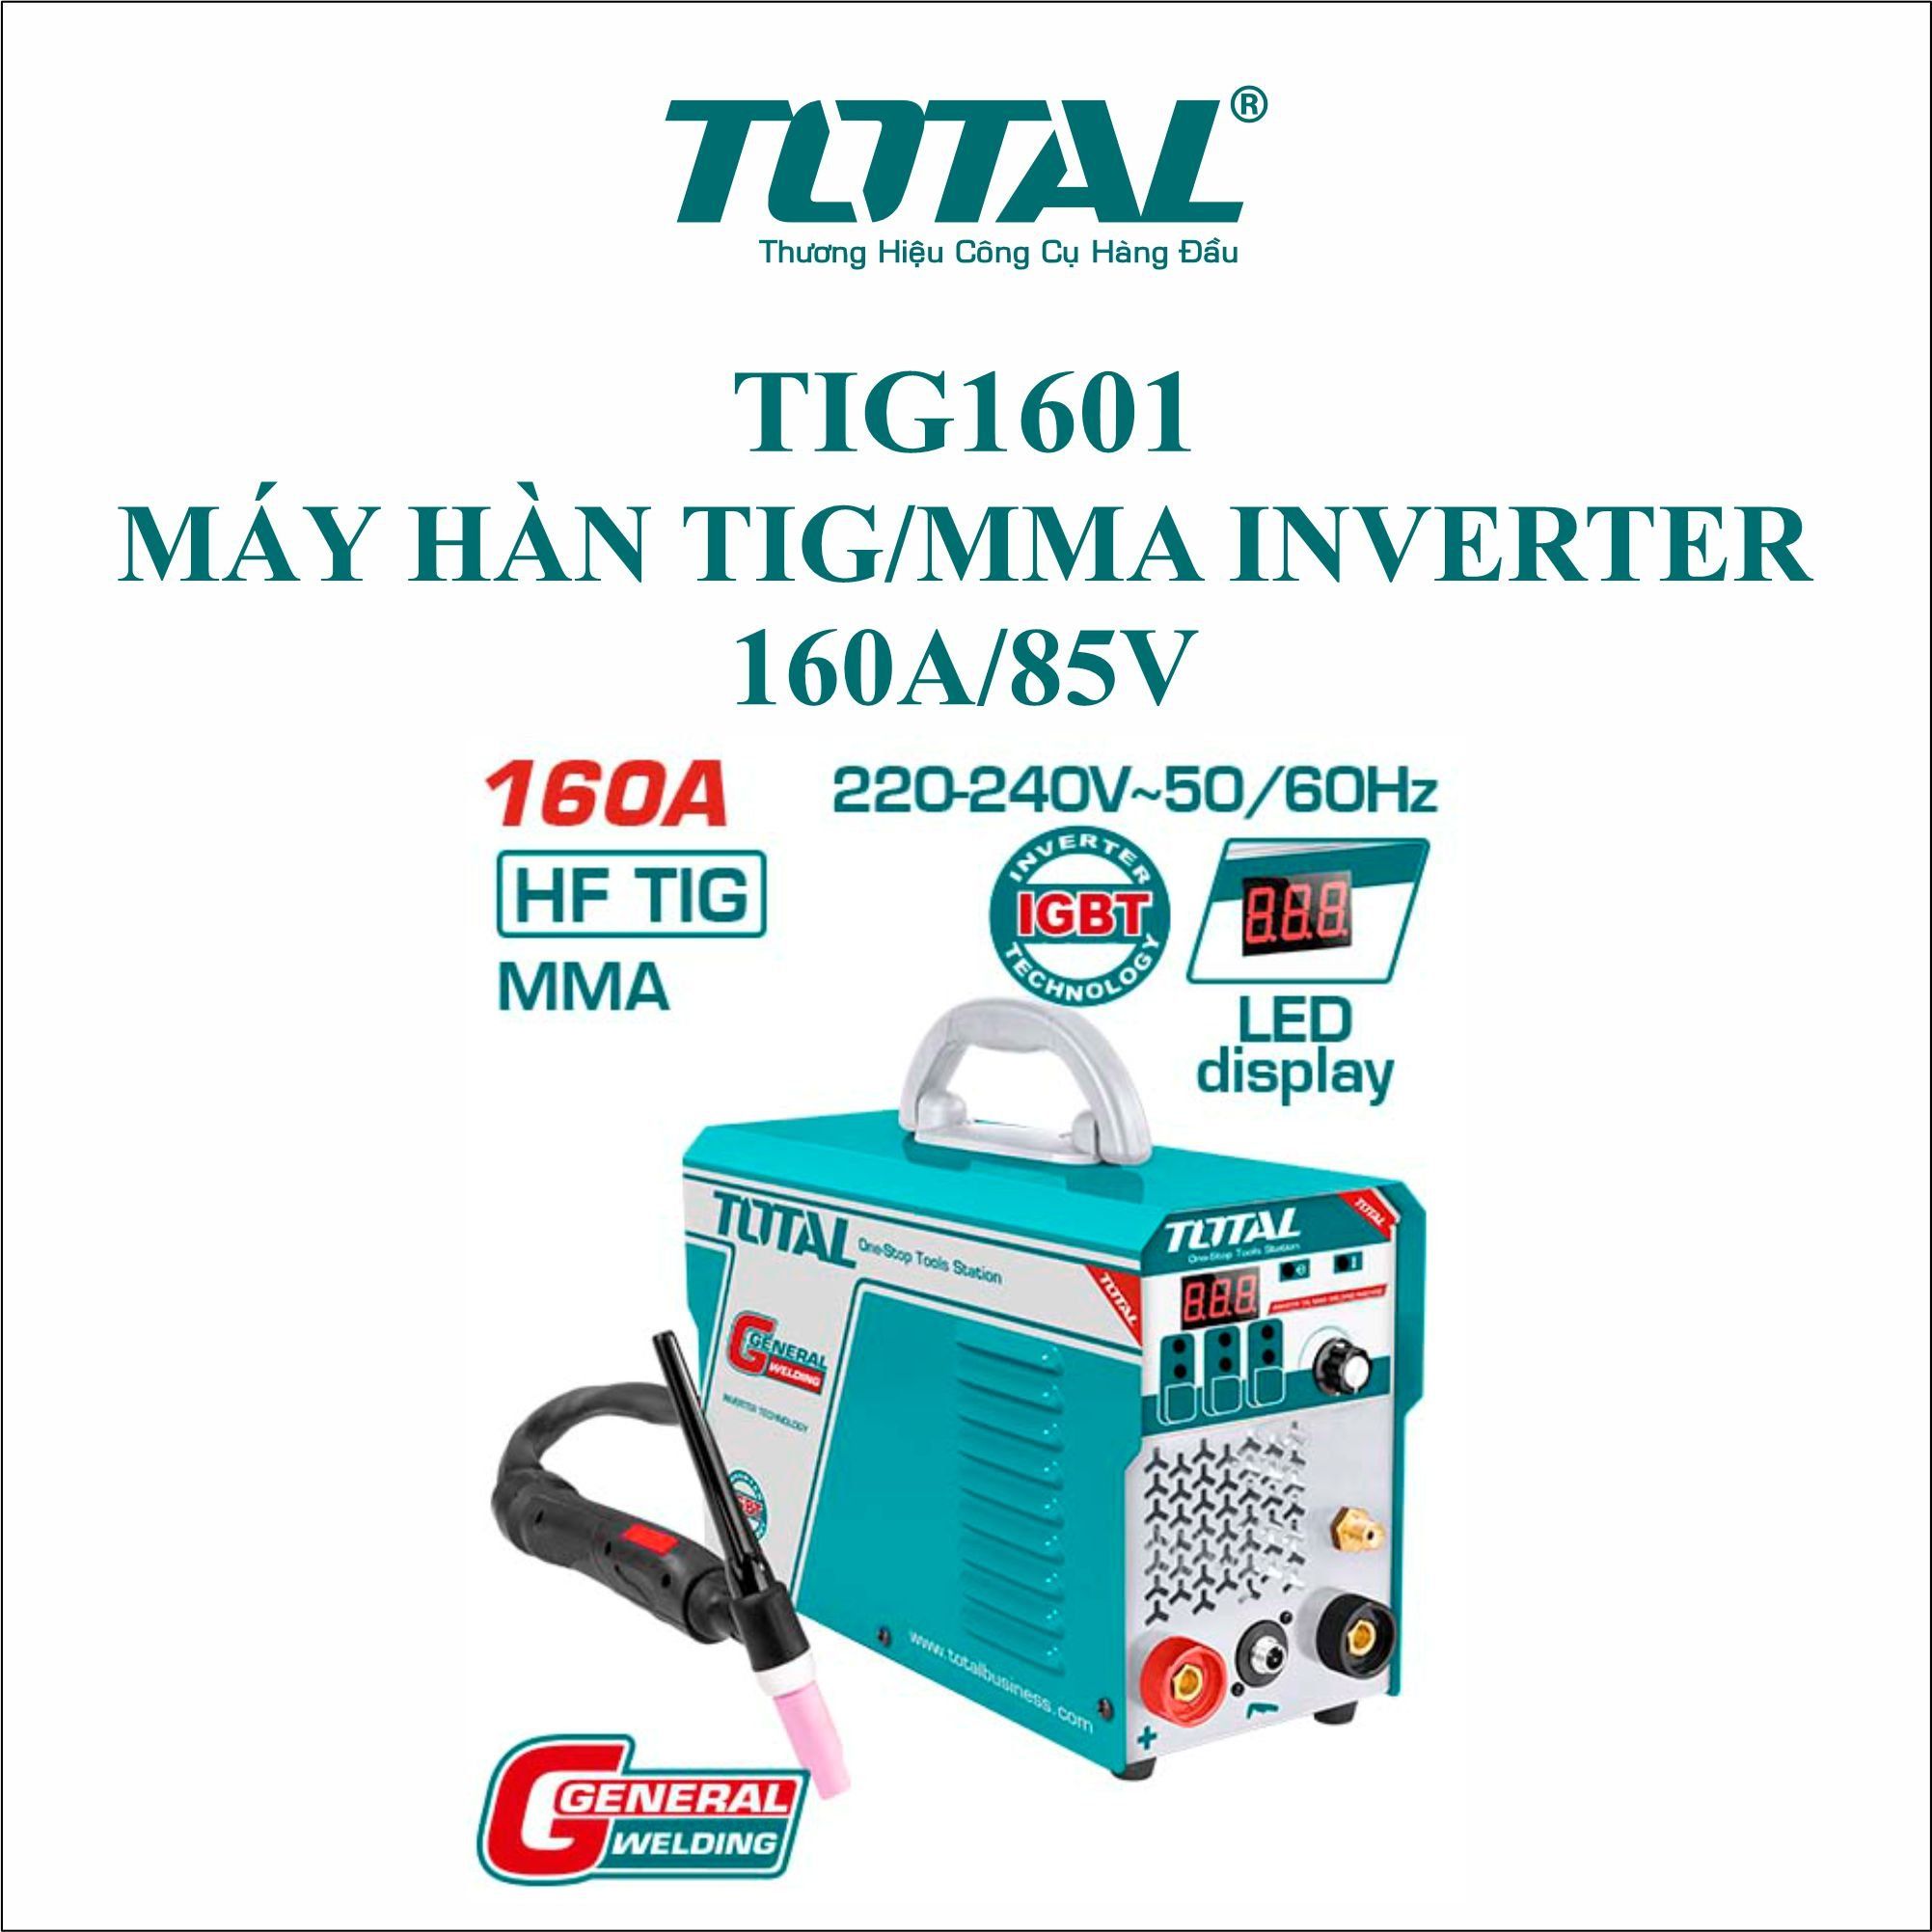  Máy hàn TIG/MMA Inverter  160A/85V Total TIG1601 